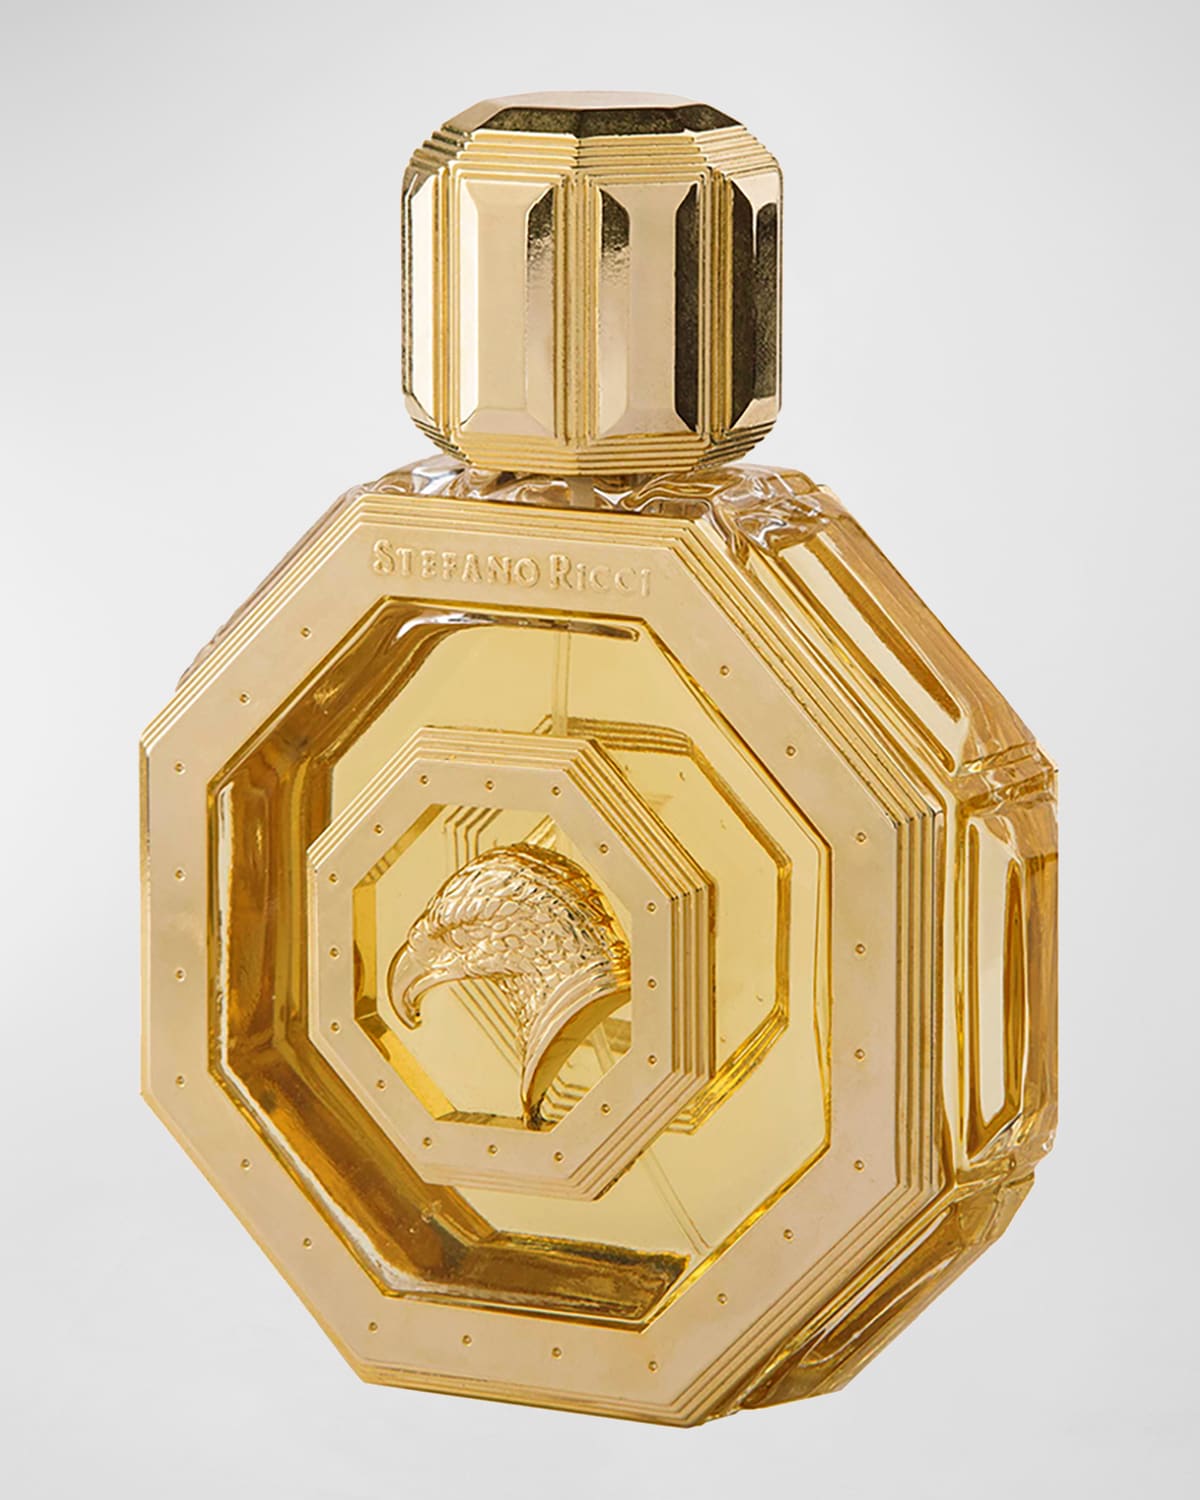 Royal Eagle Gold Fragrance for Men, 3.4 oz.